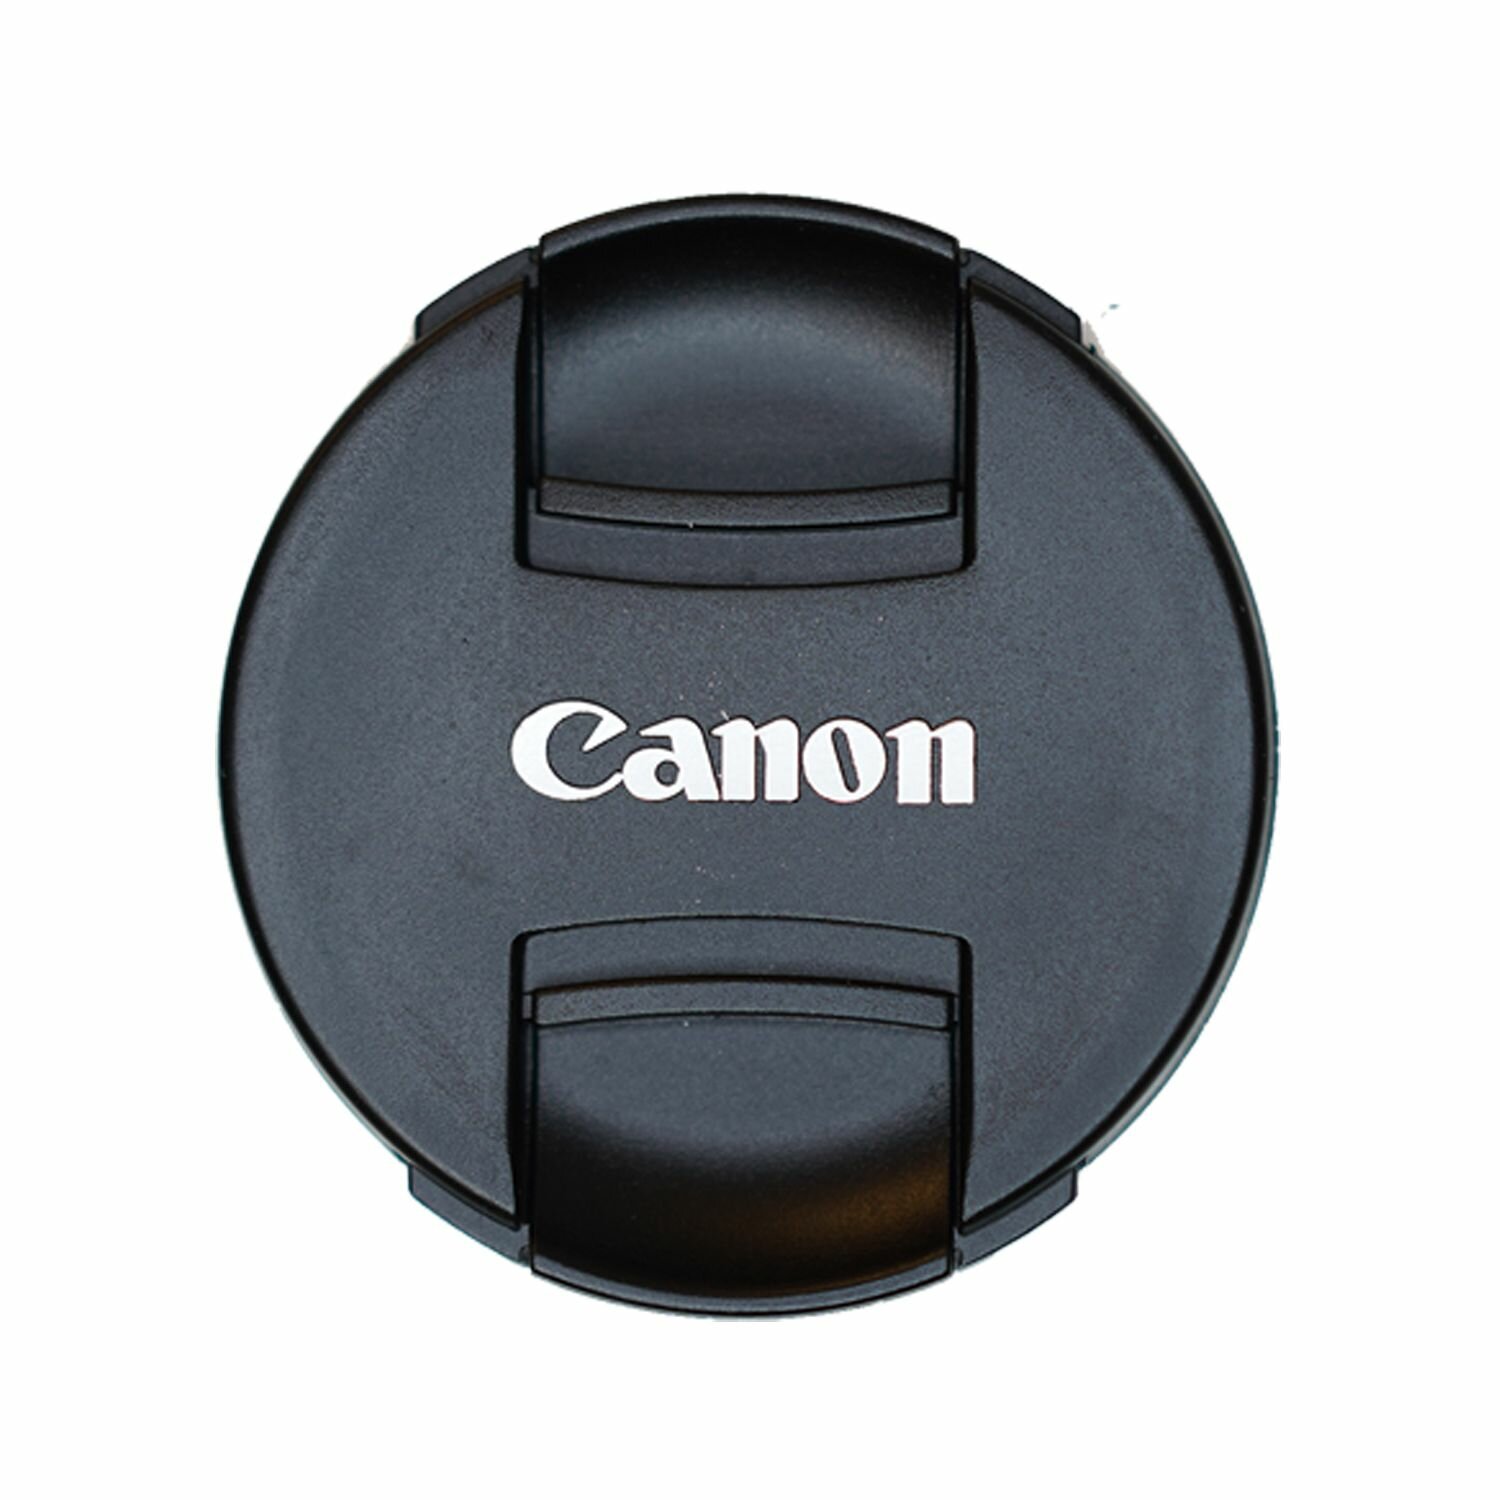 Защитная крышка 82 мм для объектива с надписью "Canon"